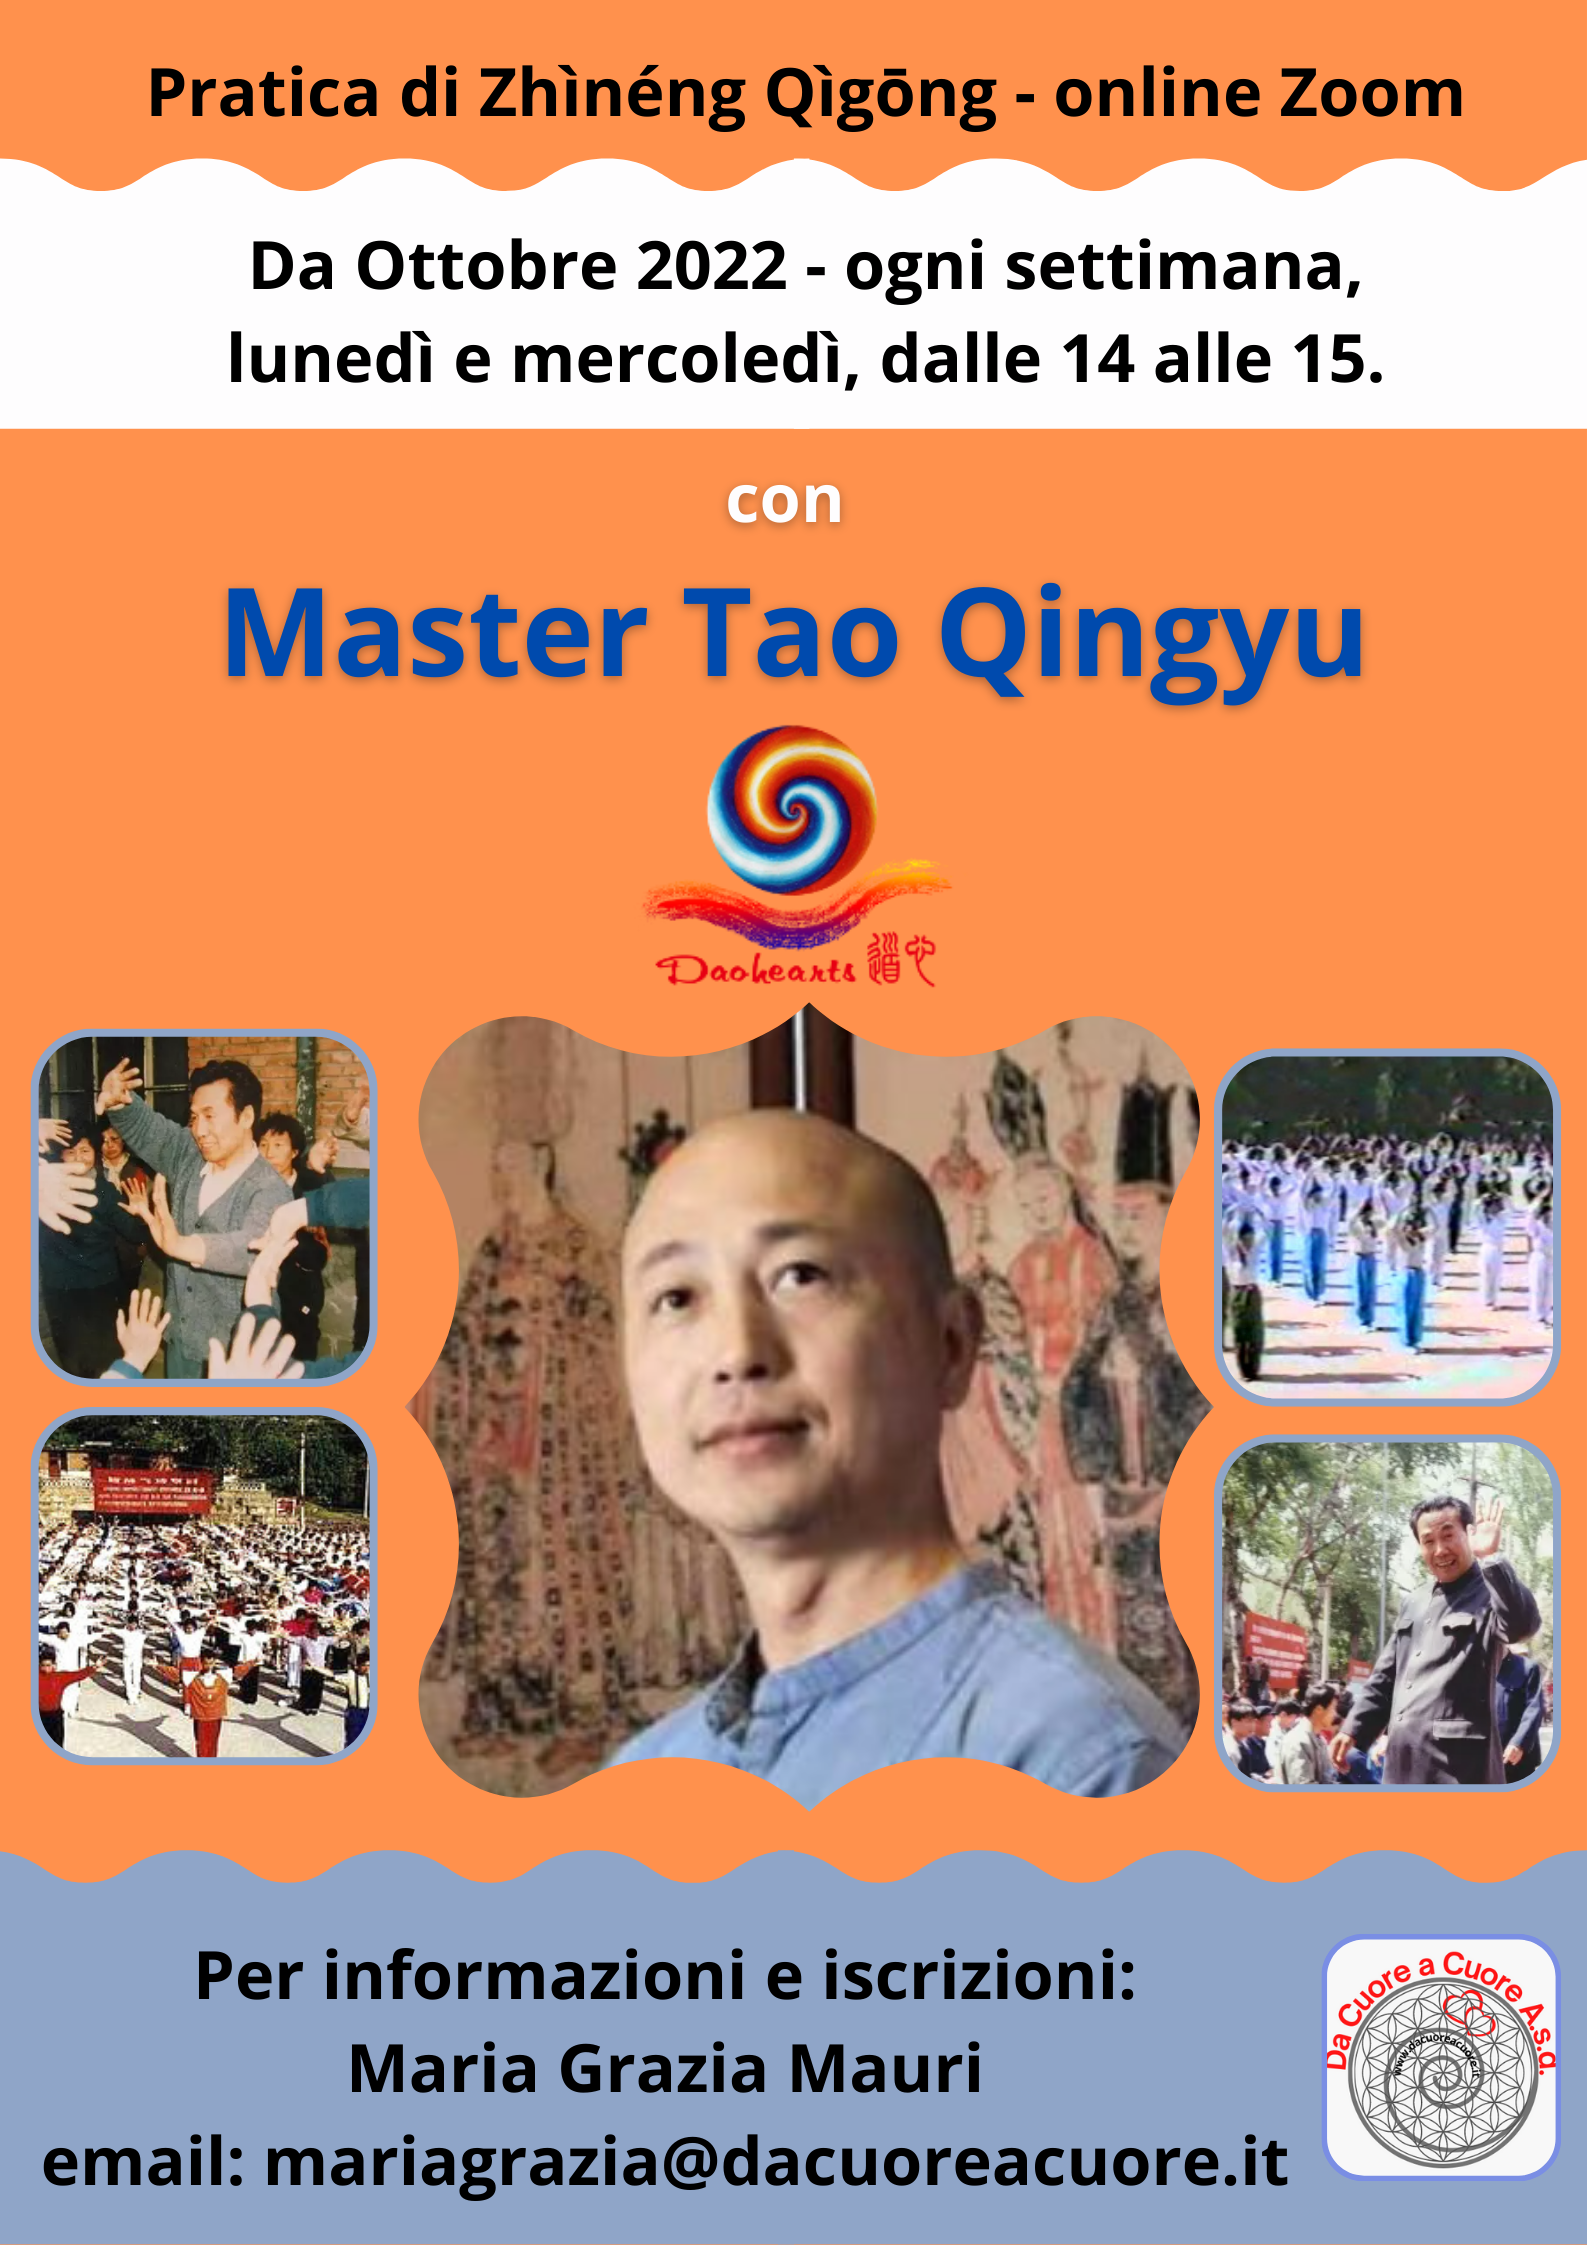 Zhineng Qigong settimanale online Zoom con Master Tao Qingyu